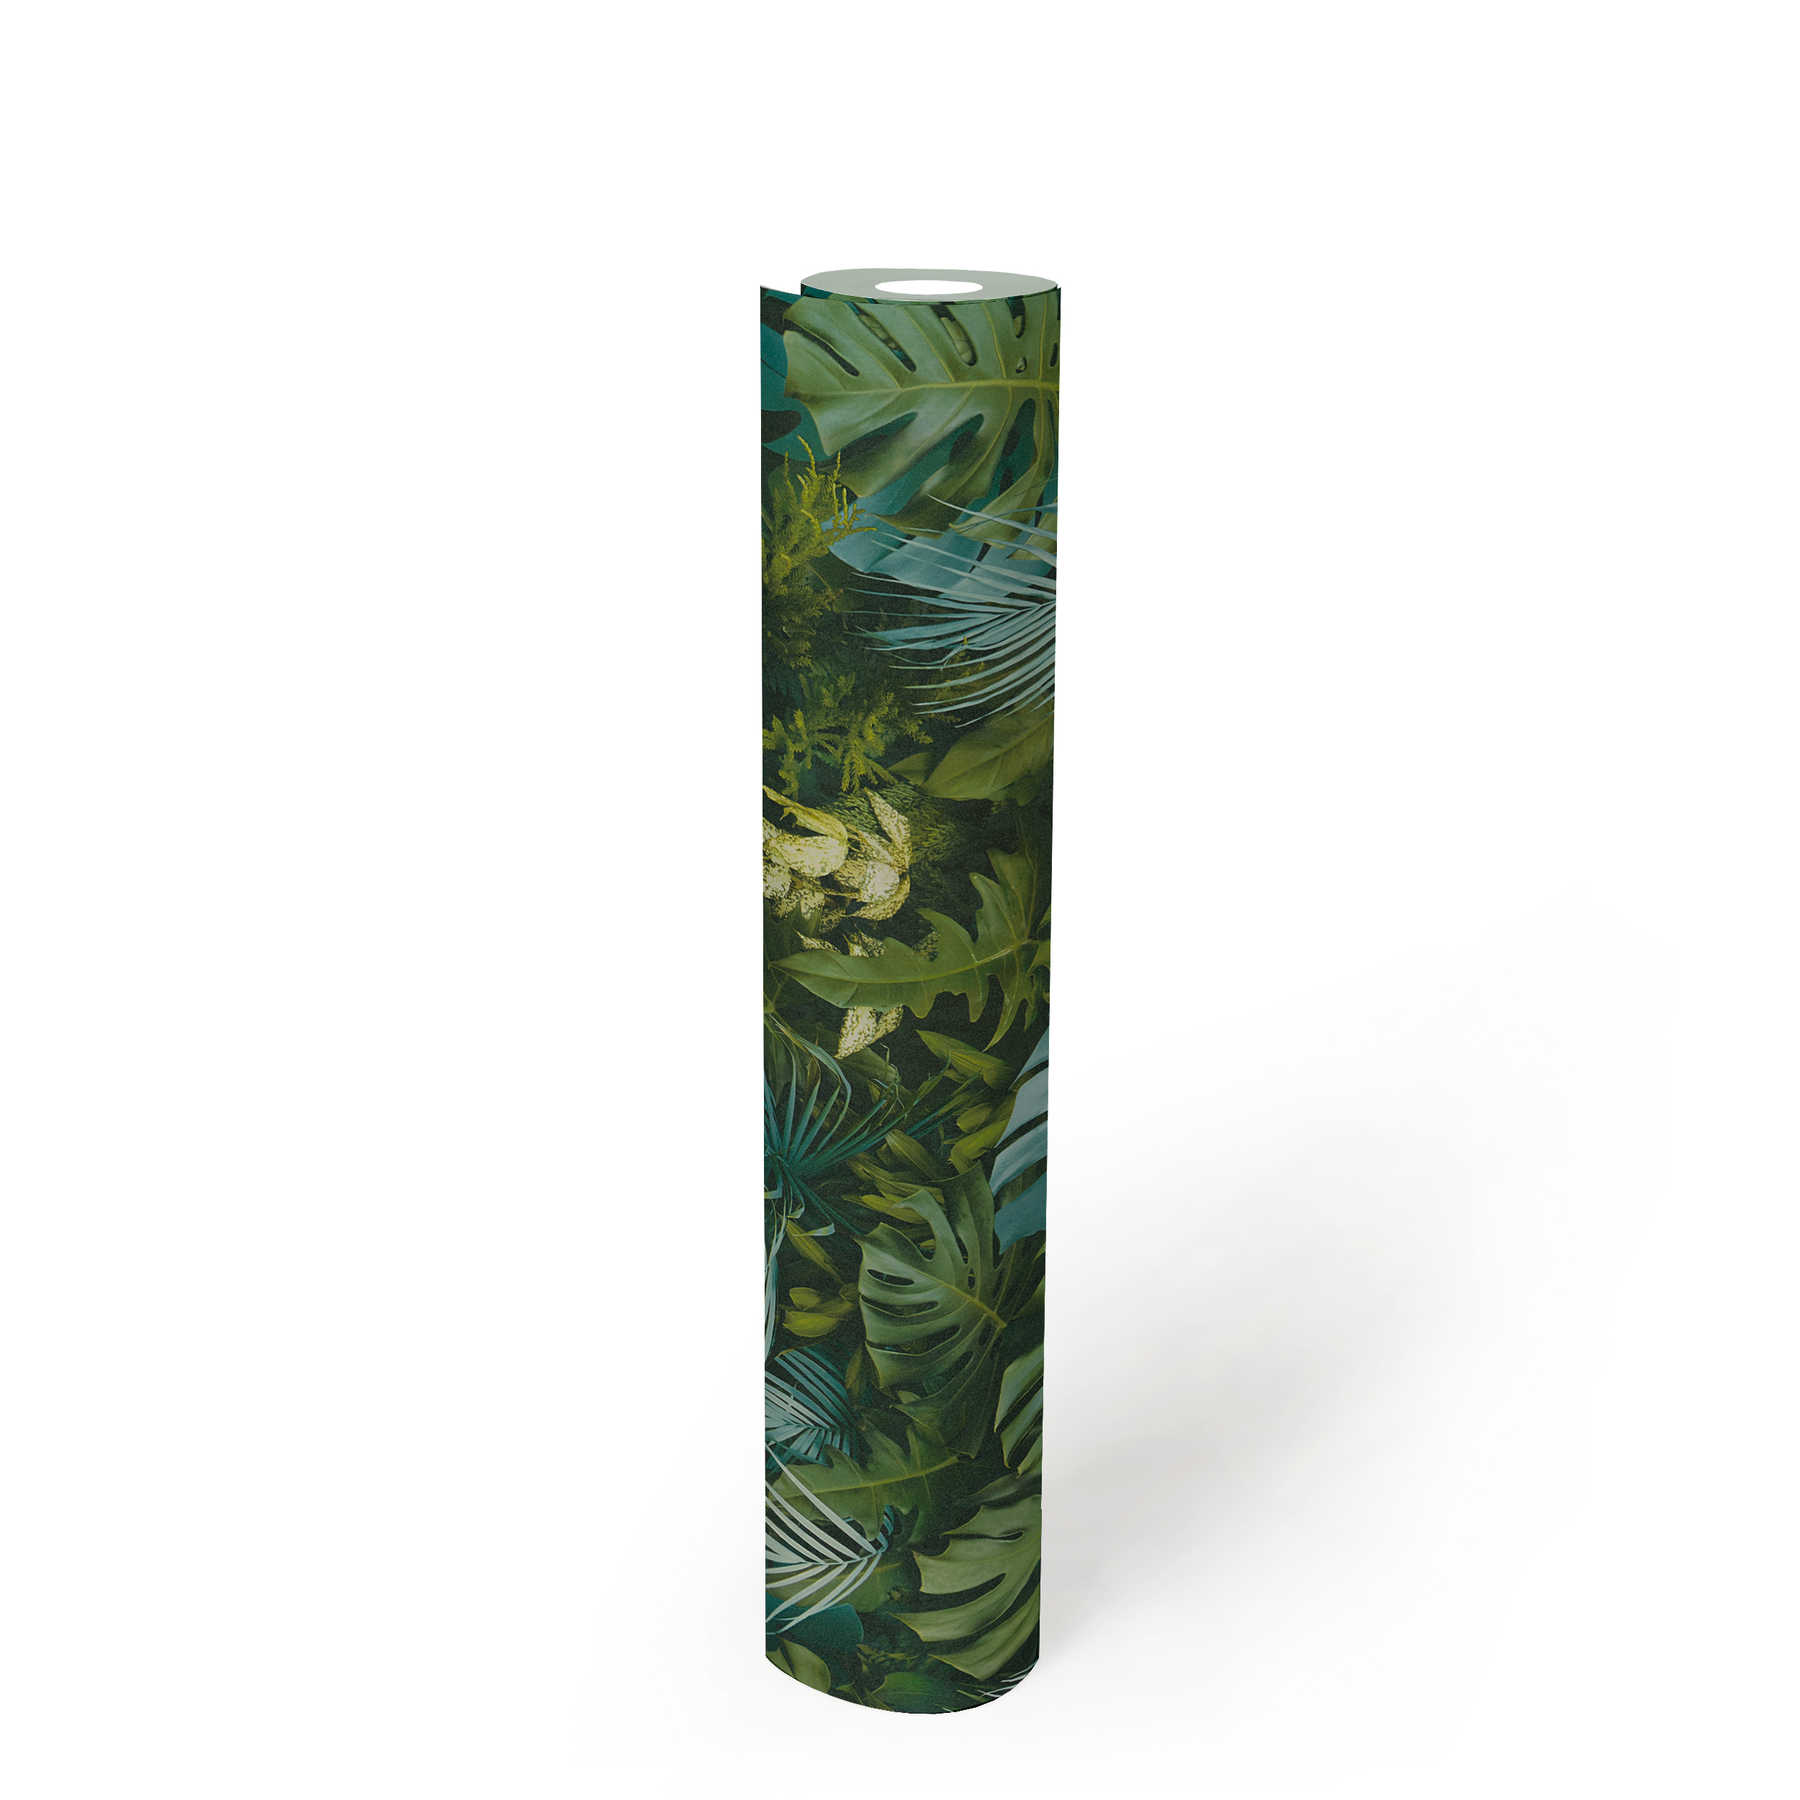             Tapete Grüner Blätterwald, realistisch, Farbakzente – Grün, Blau
        